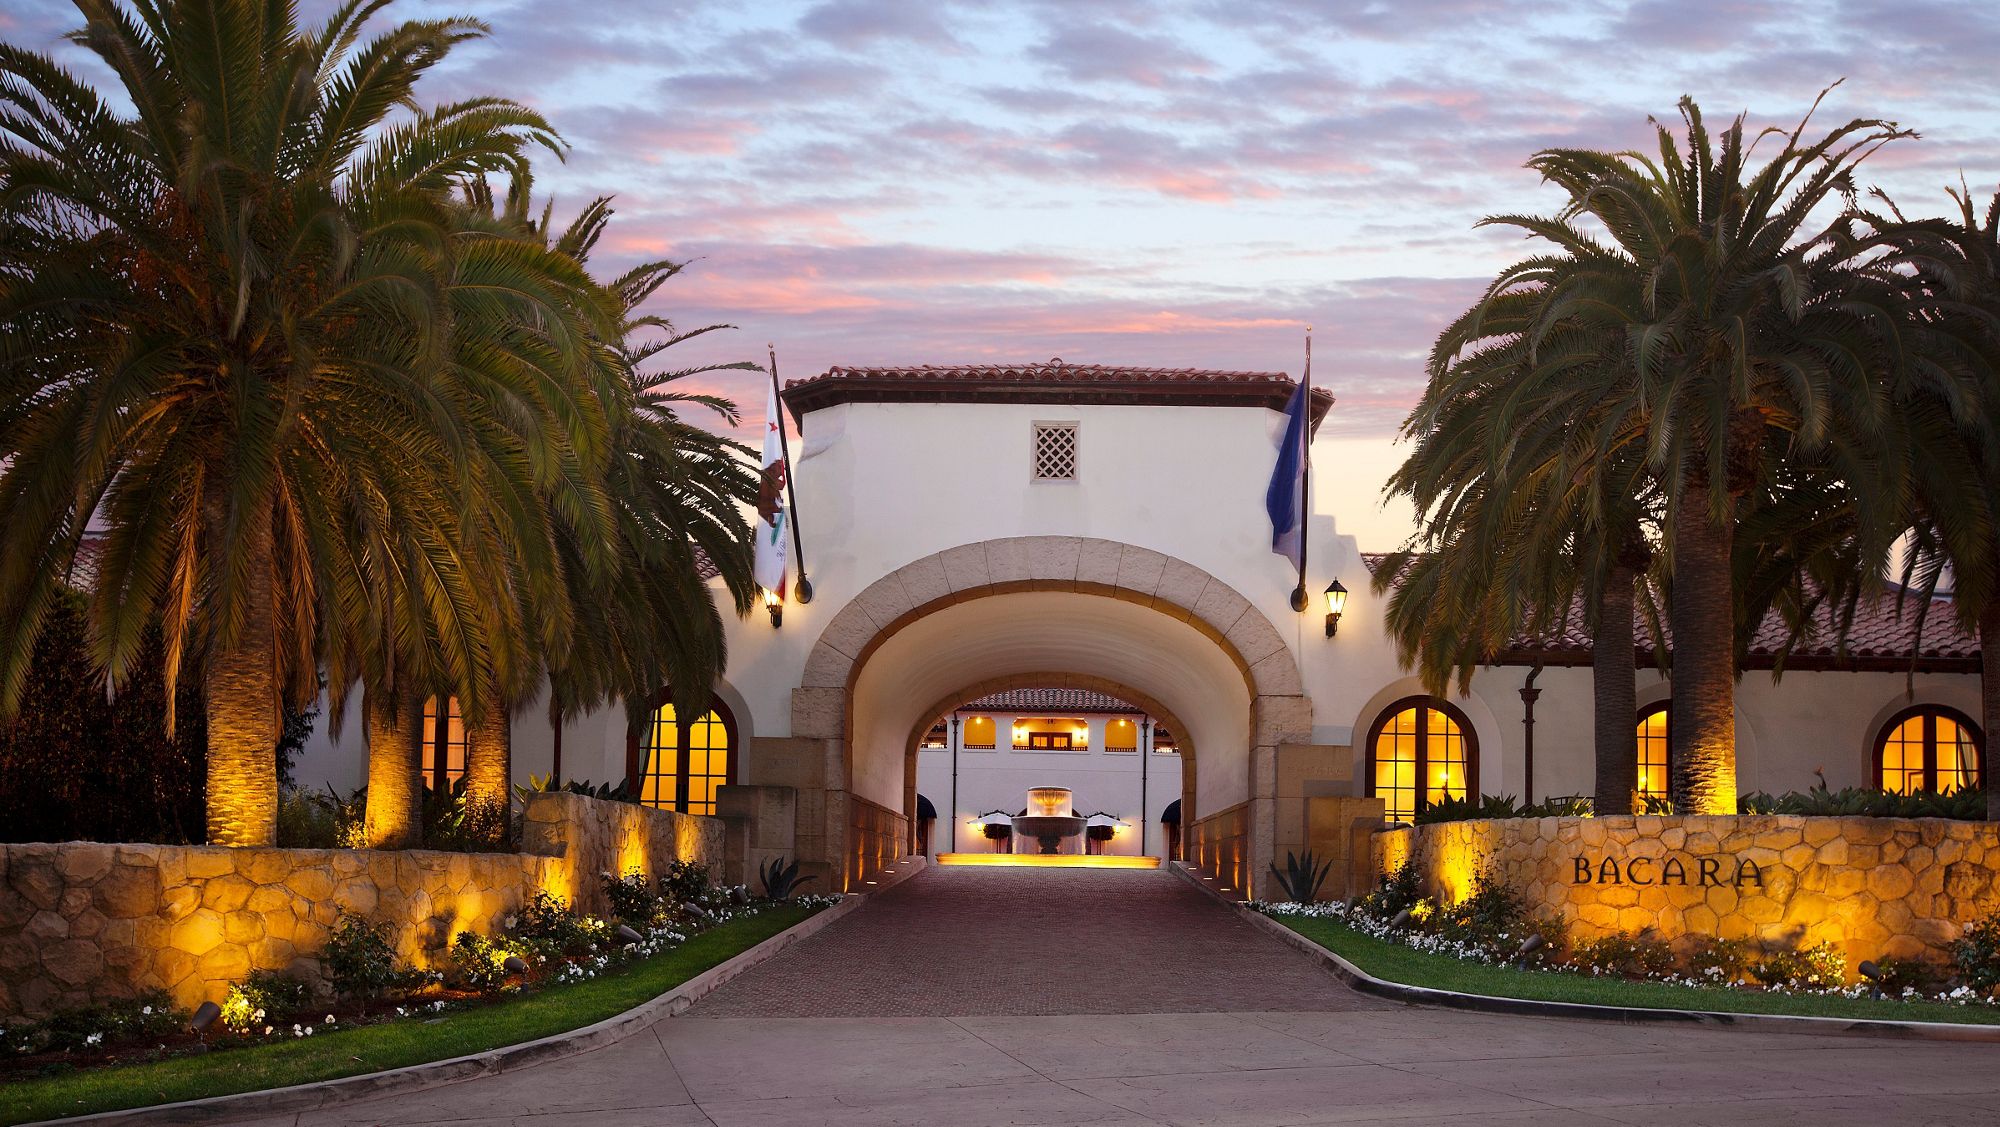 Bacara Entrance Sunset_Santa Barbara.jpg